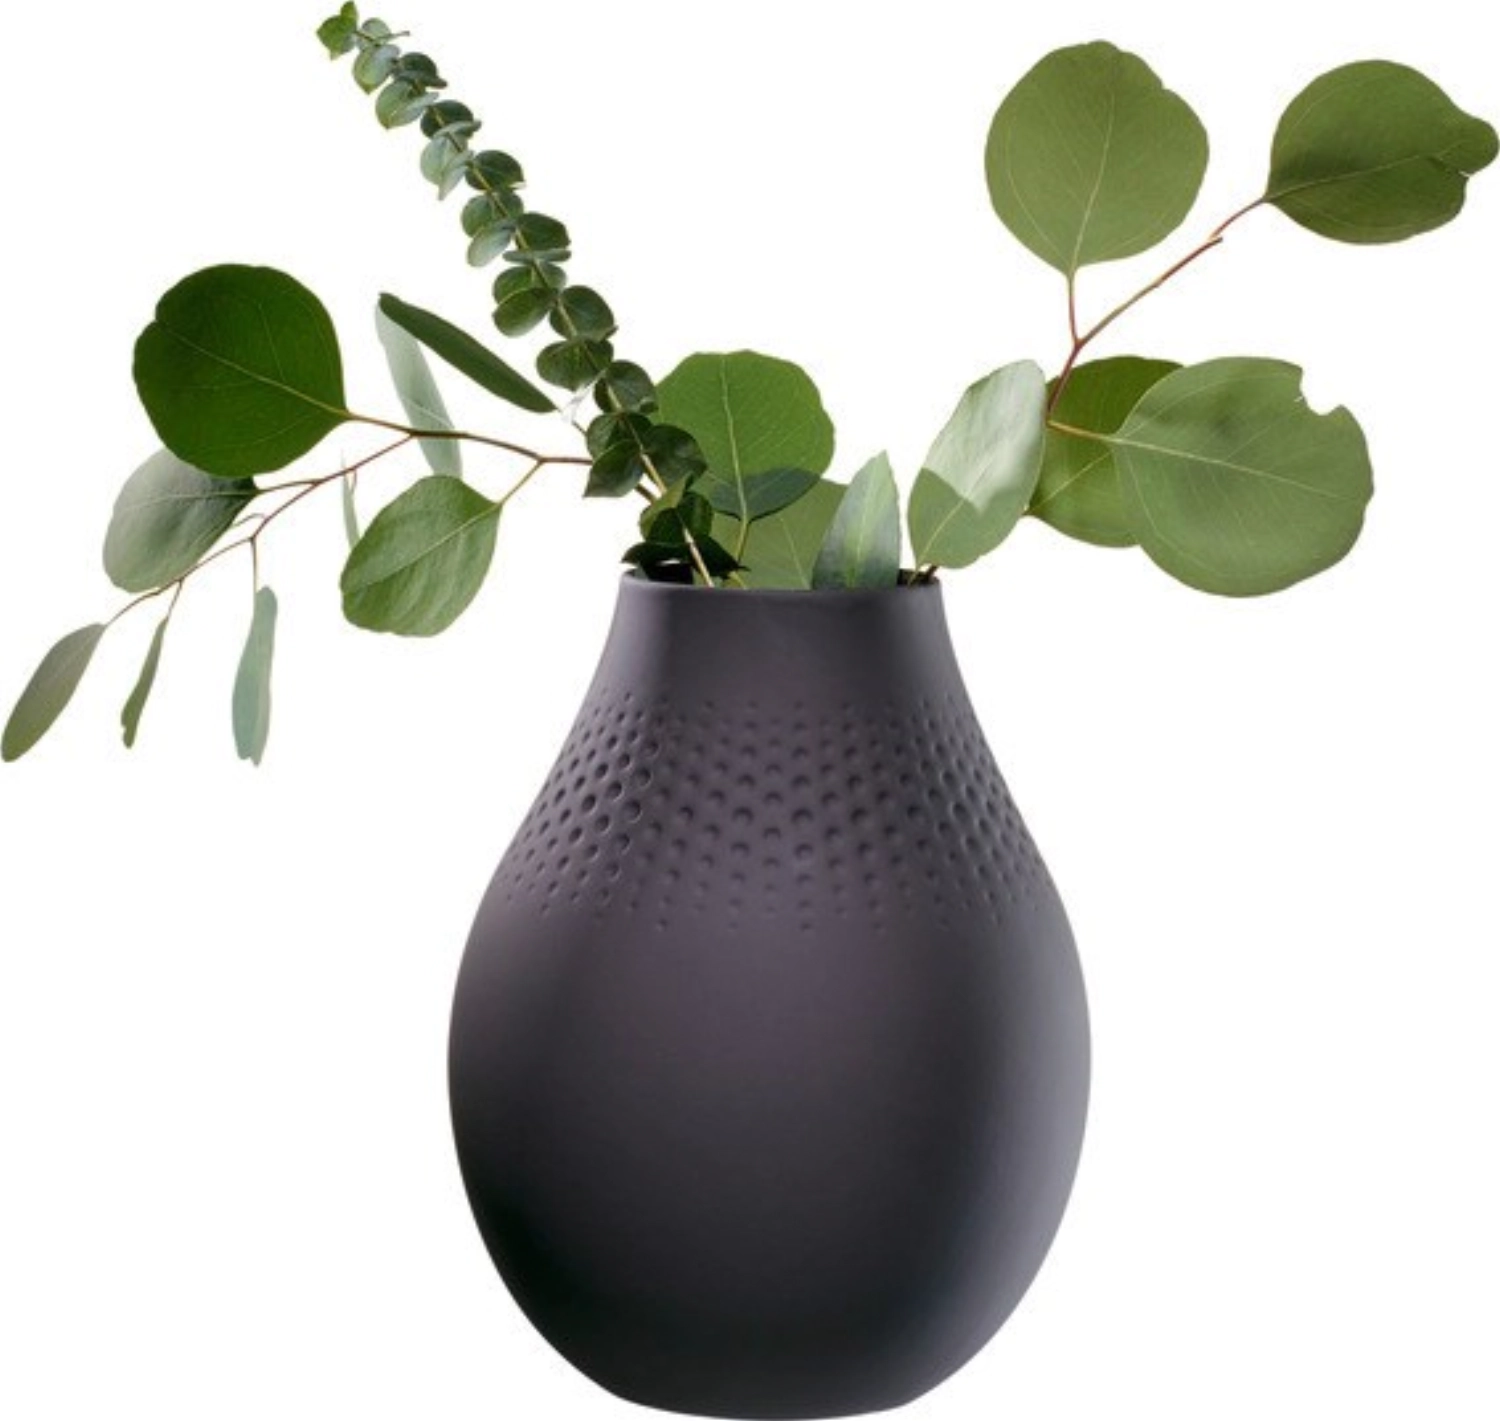 Manufacture Collier noir Vase Perle hoch 16x16x20cm 2.34lt